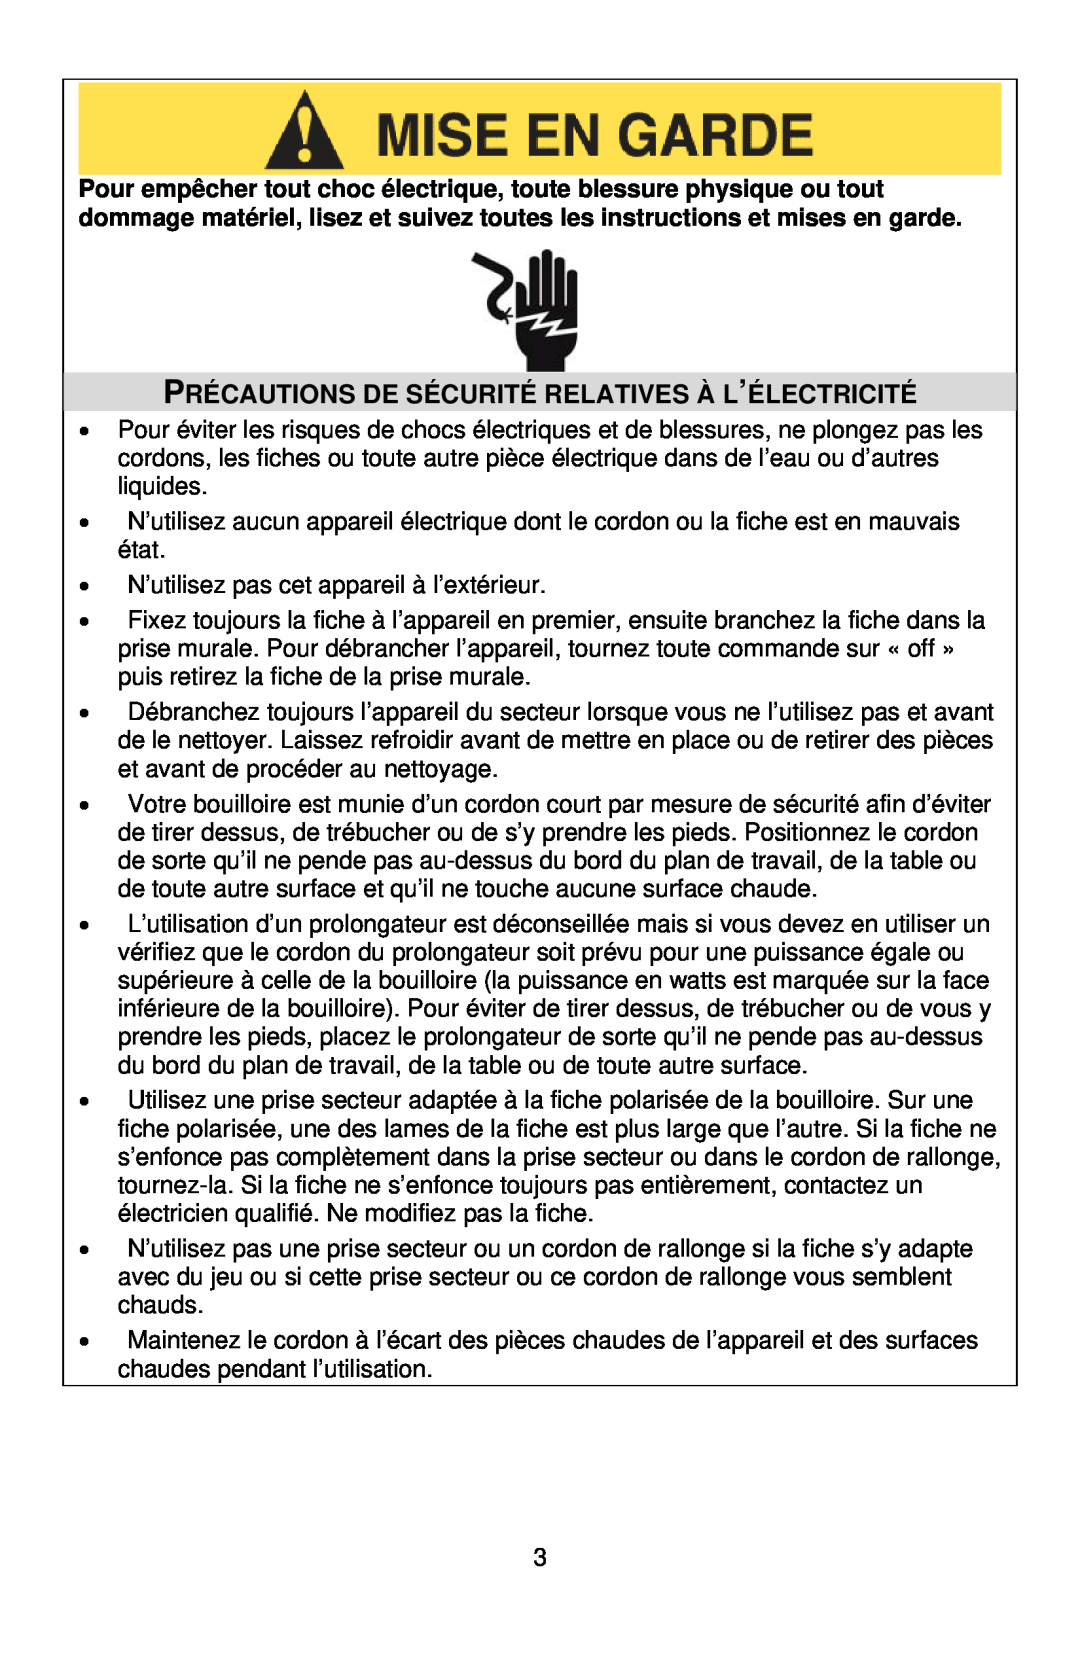 West Bend 6400 instruction manual Précautions De Sécurité Relatives À L’Électricité 